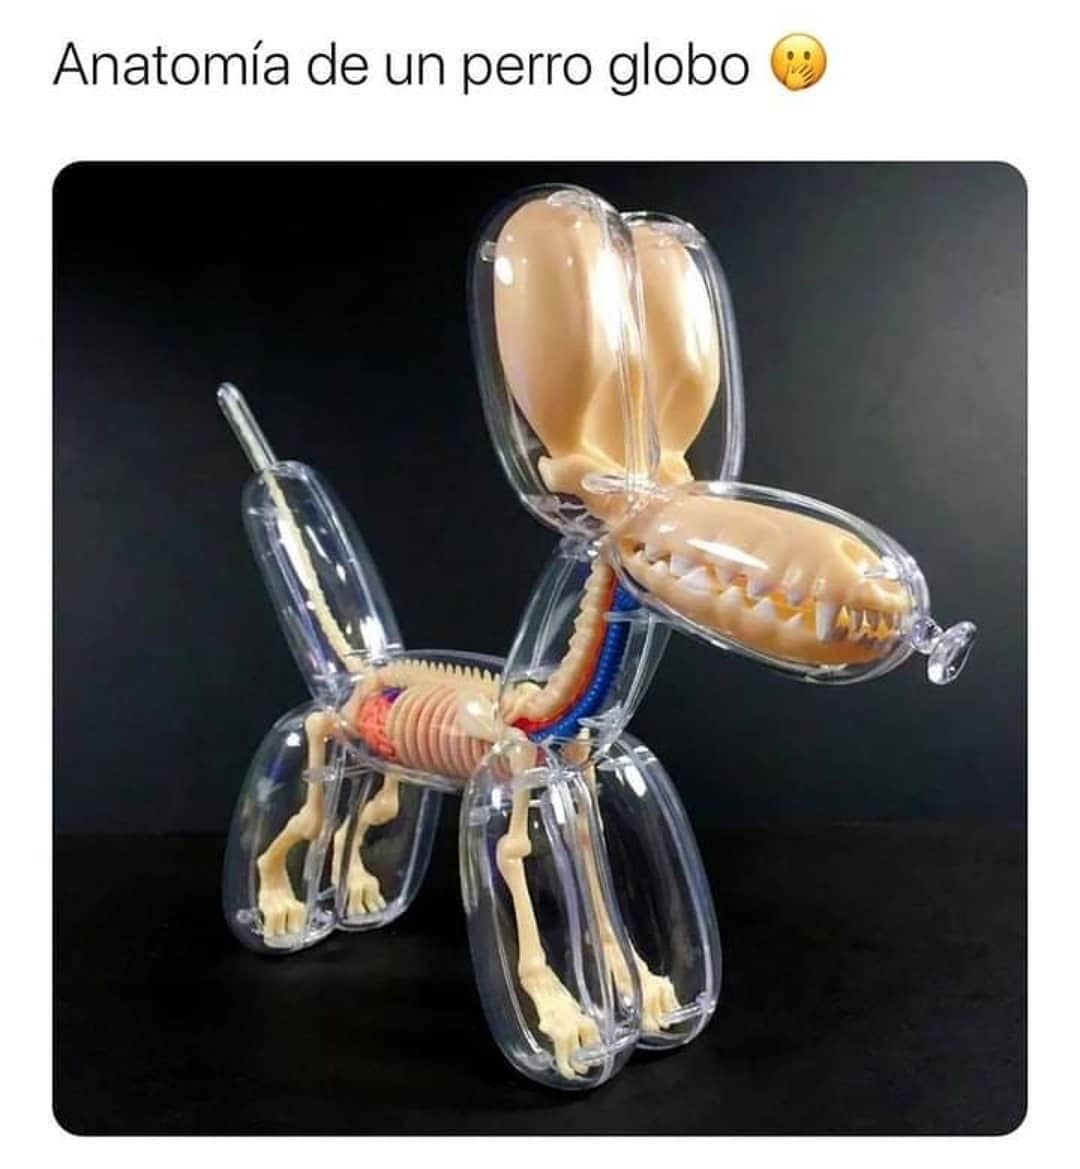 Anatomía de un perro globo.